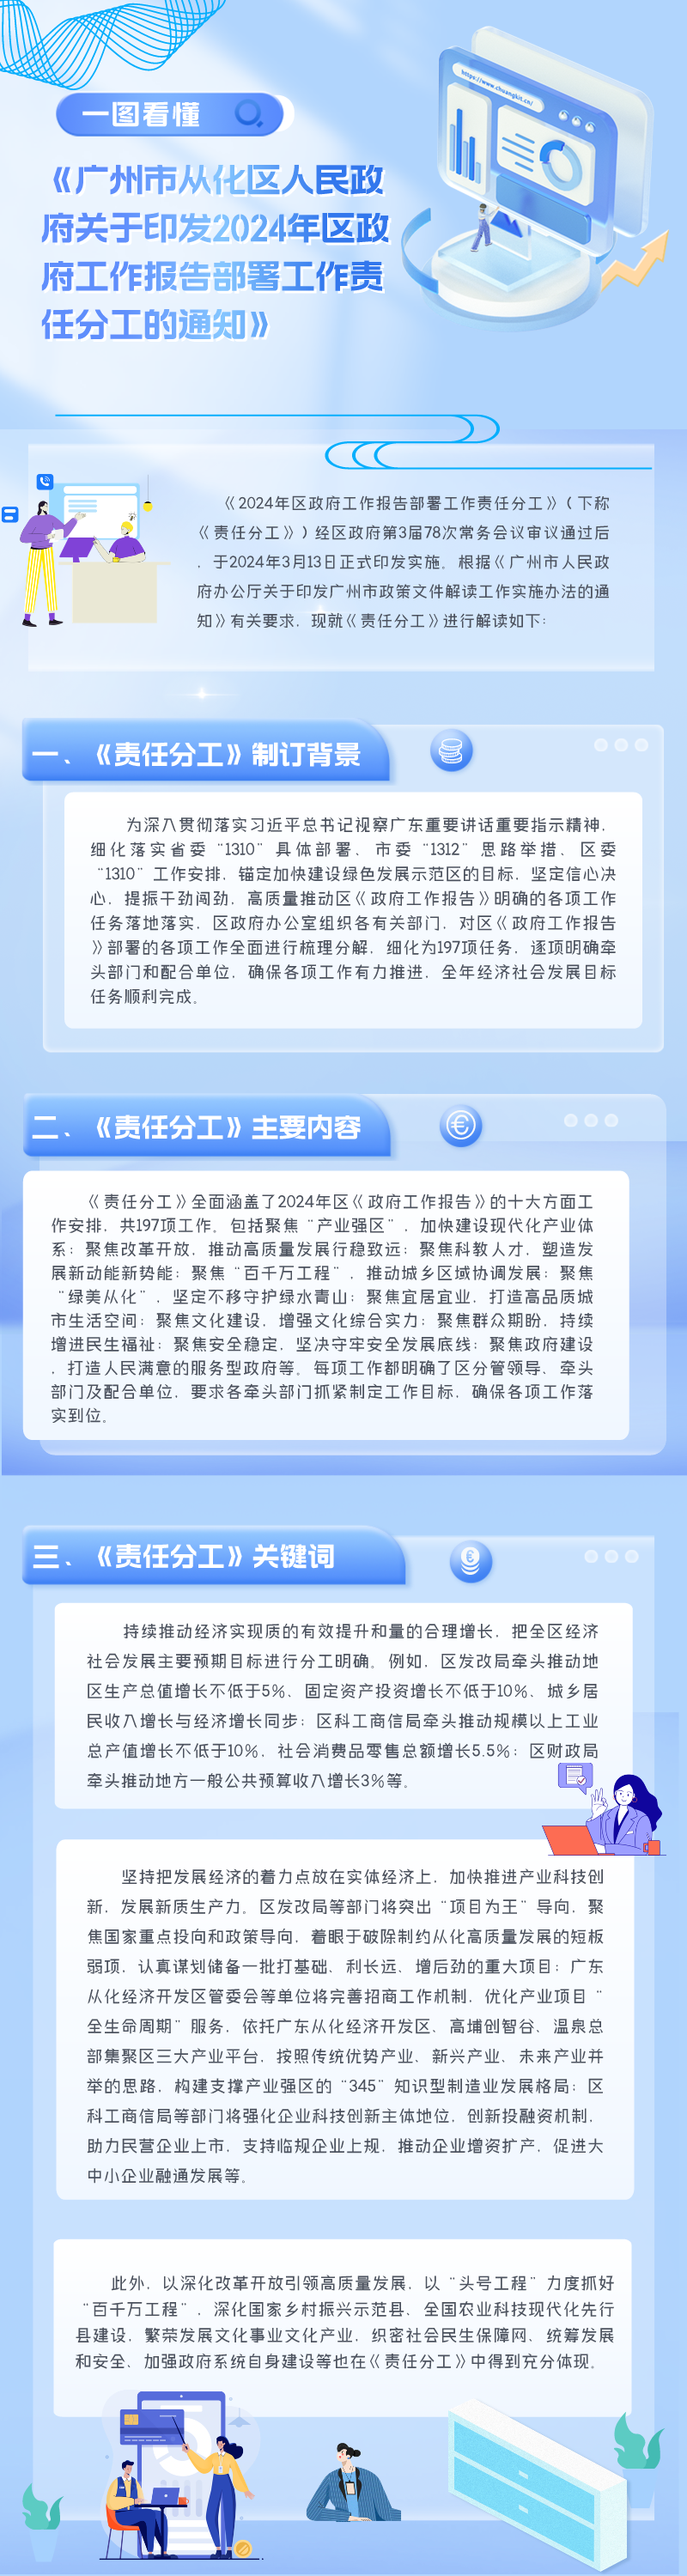 【一图读懂】《广州市从化区人民政府关于印发2024年区政府工作报告部署工作责任分工__的通知》.png